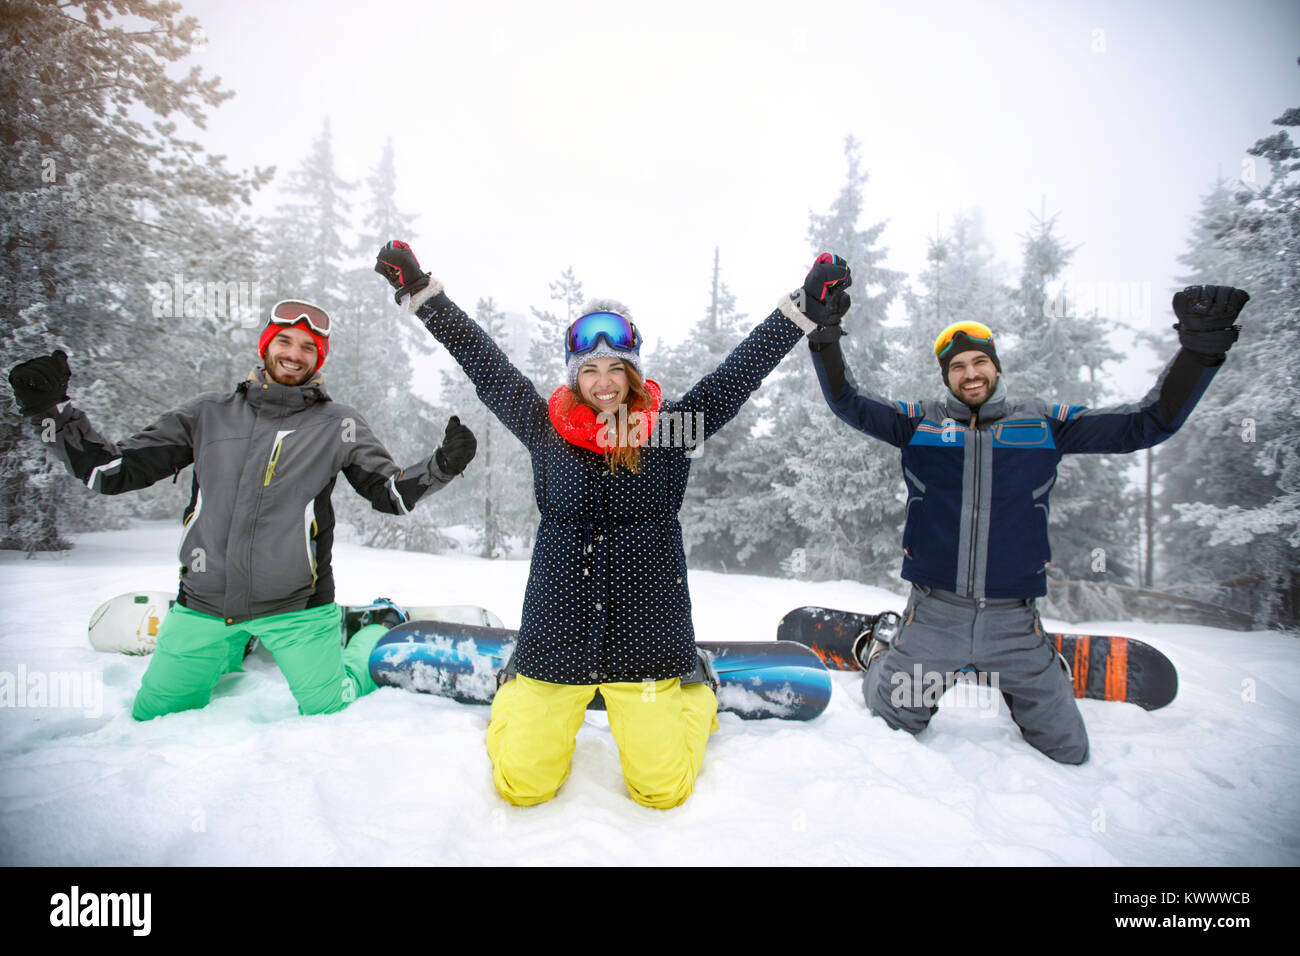 Hembra con dos machos snowboarders arrodillado sobre la nieve con manos levantadas Foto de stock